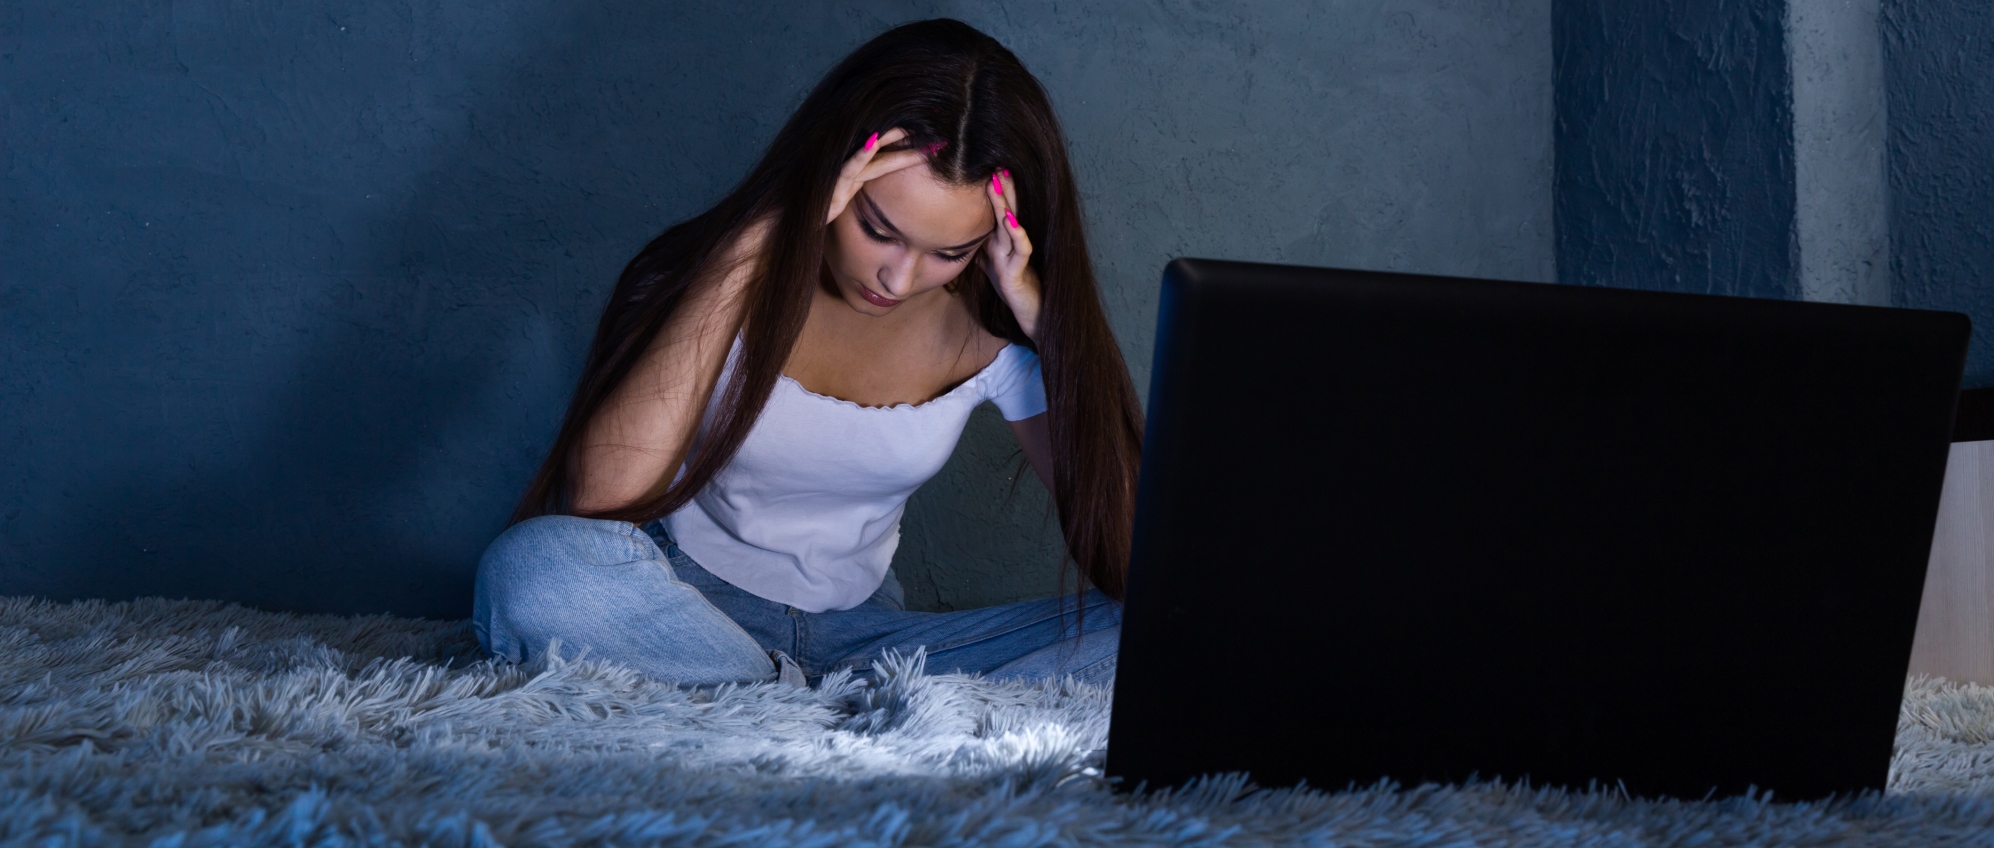 Online bántalmazás, azaz cyberbullying